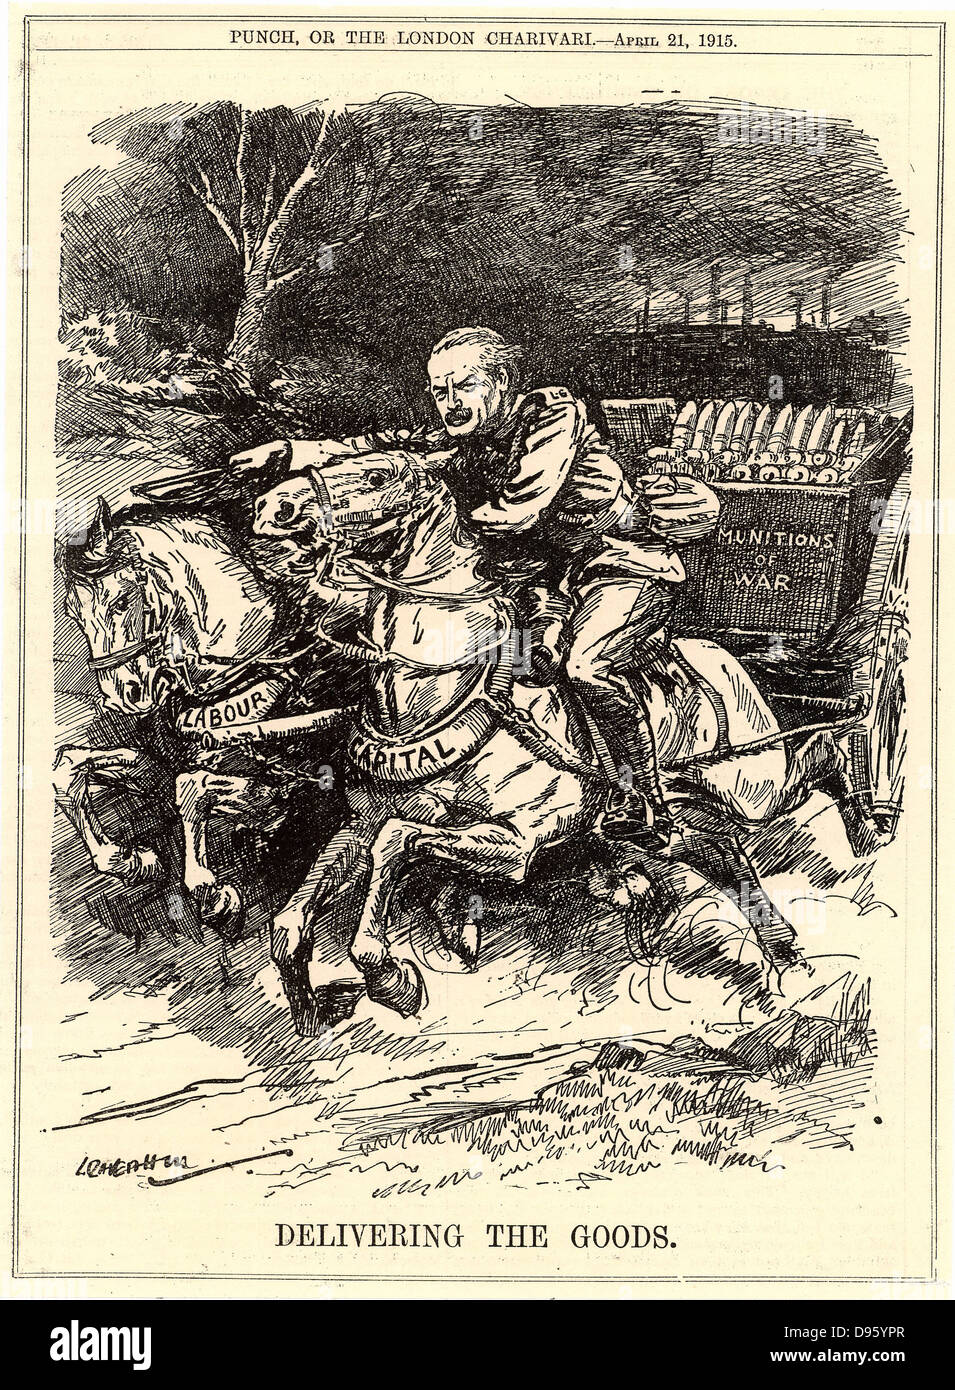 David Lloyd George (1863-1945) Welsh - geborener britischer Staatsmann, war Minister für Munition im Jahr 1915 ernannt. Hier ist er gezeigt mit voller Geschwindigkeit fahren einen Warenkorb von Munition, die von Kapital und Arbeit produziert. Karikatur von Leonard Raven-Hill von Punch" London. Stockfoto